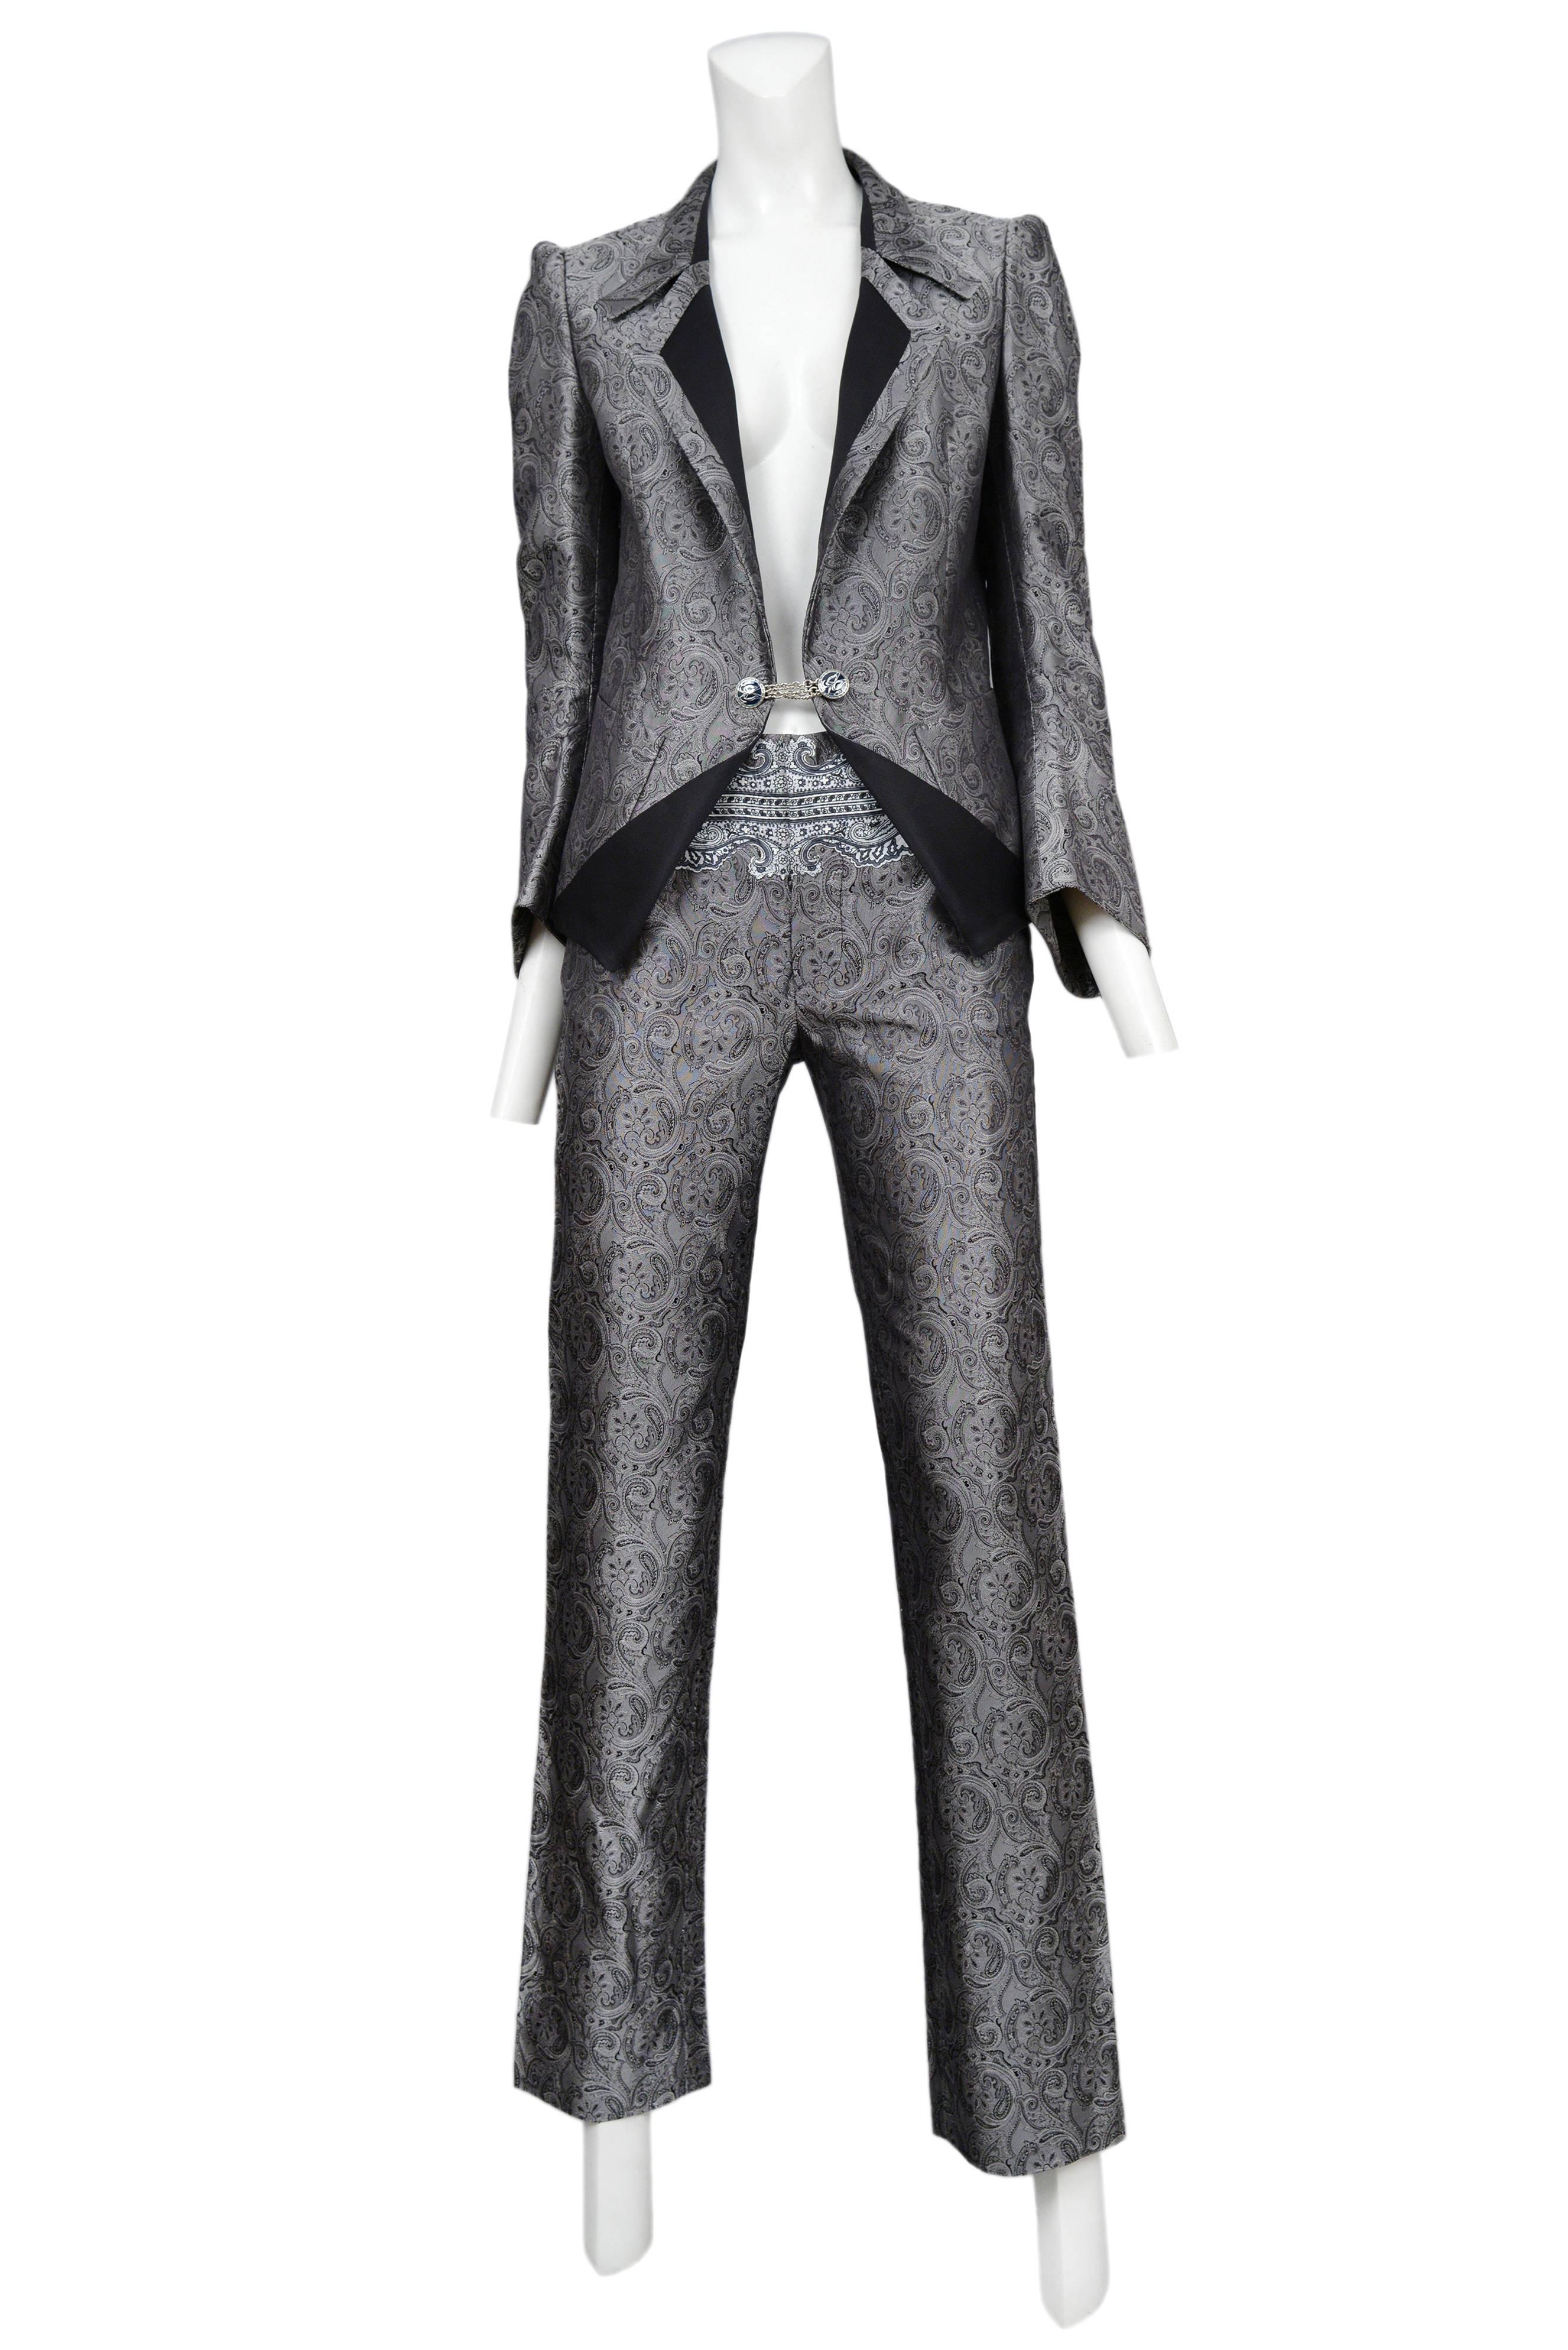 Balenciaga Silver Paisely Blazer and Pants Suit 2006 at 1stDibs | burgundy  balenciaga